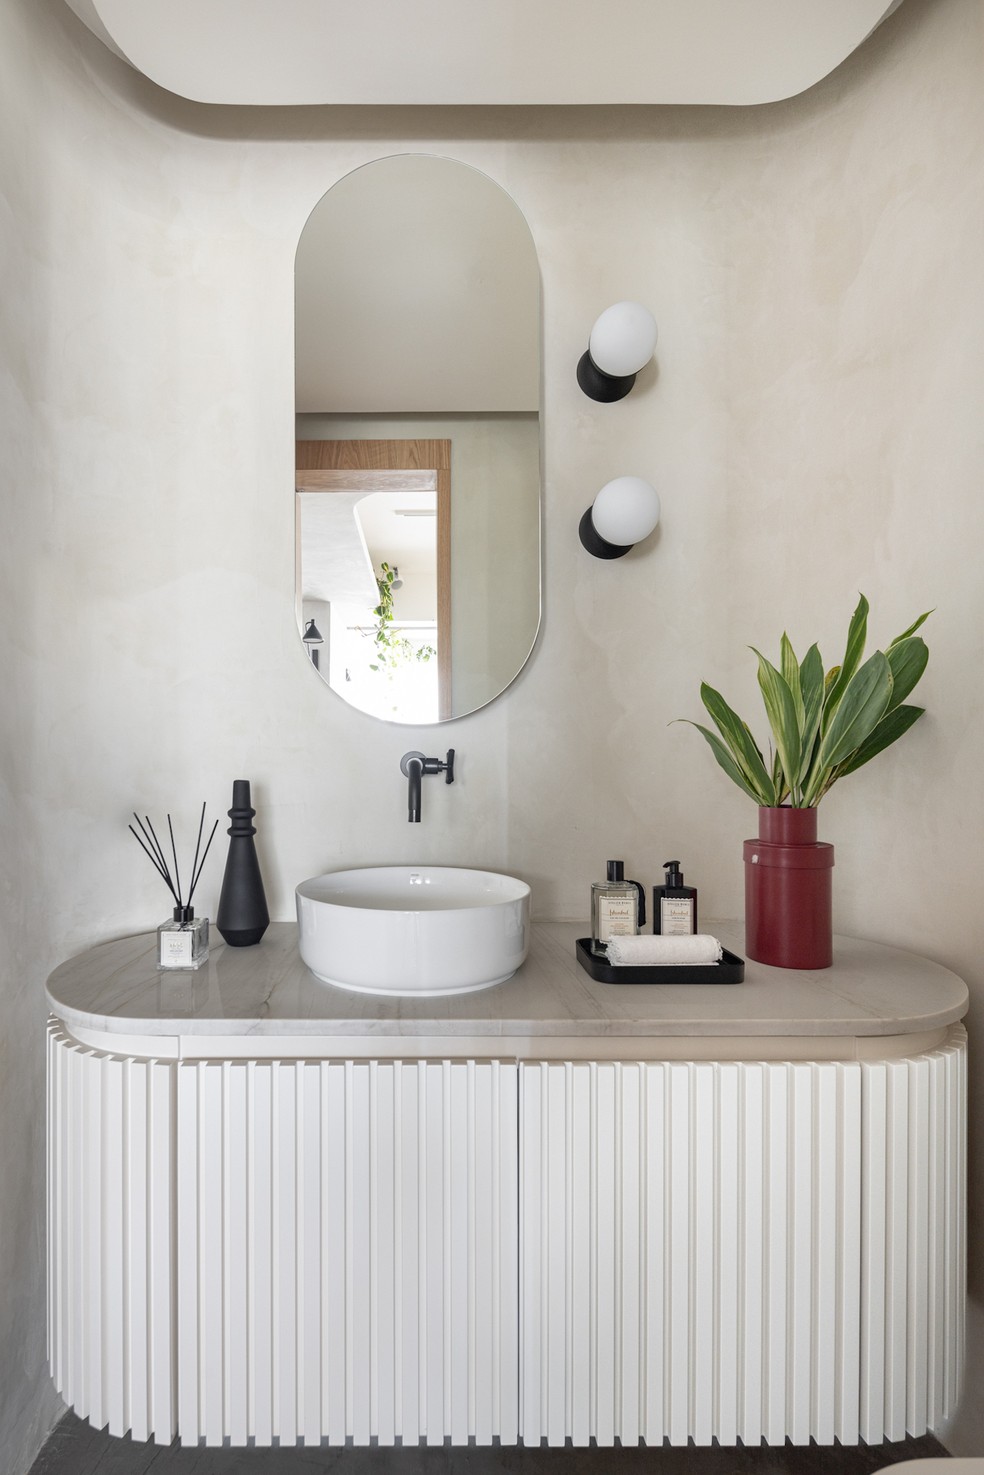 LAVABO | Majoritariamente branco, o lavabo tem uma atmosfera mais clássica. Vaso da Selvvva — Foto: Joana França / Divulgação | Produção: Mayra Navarro